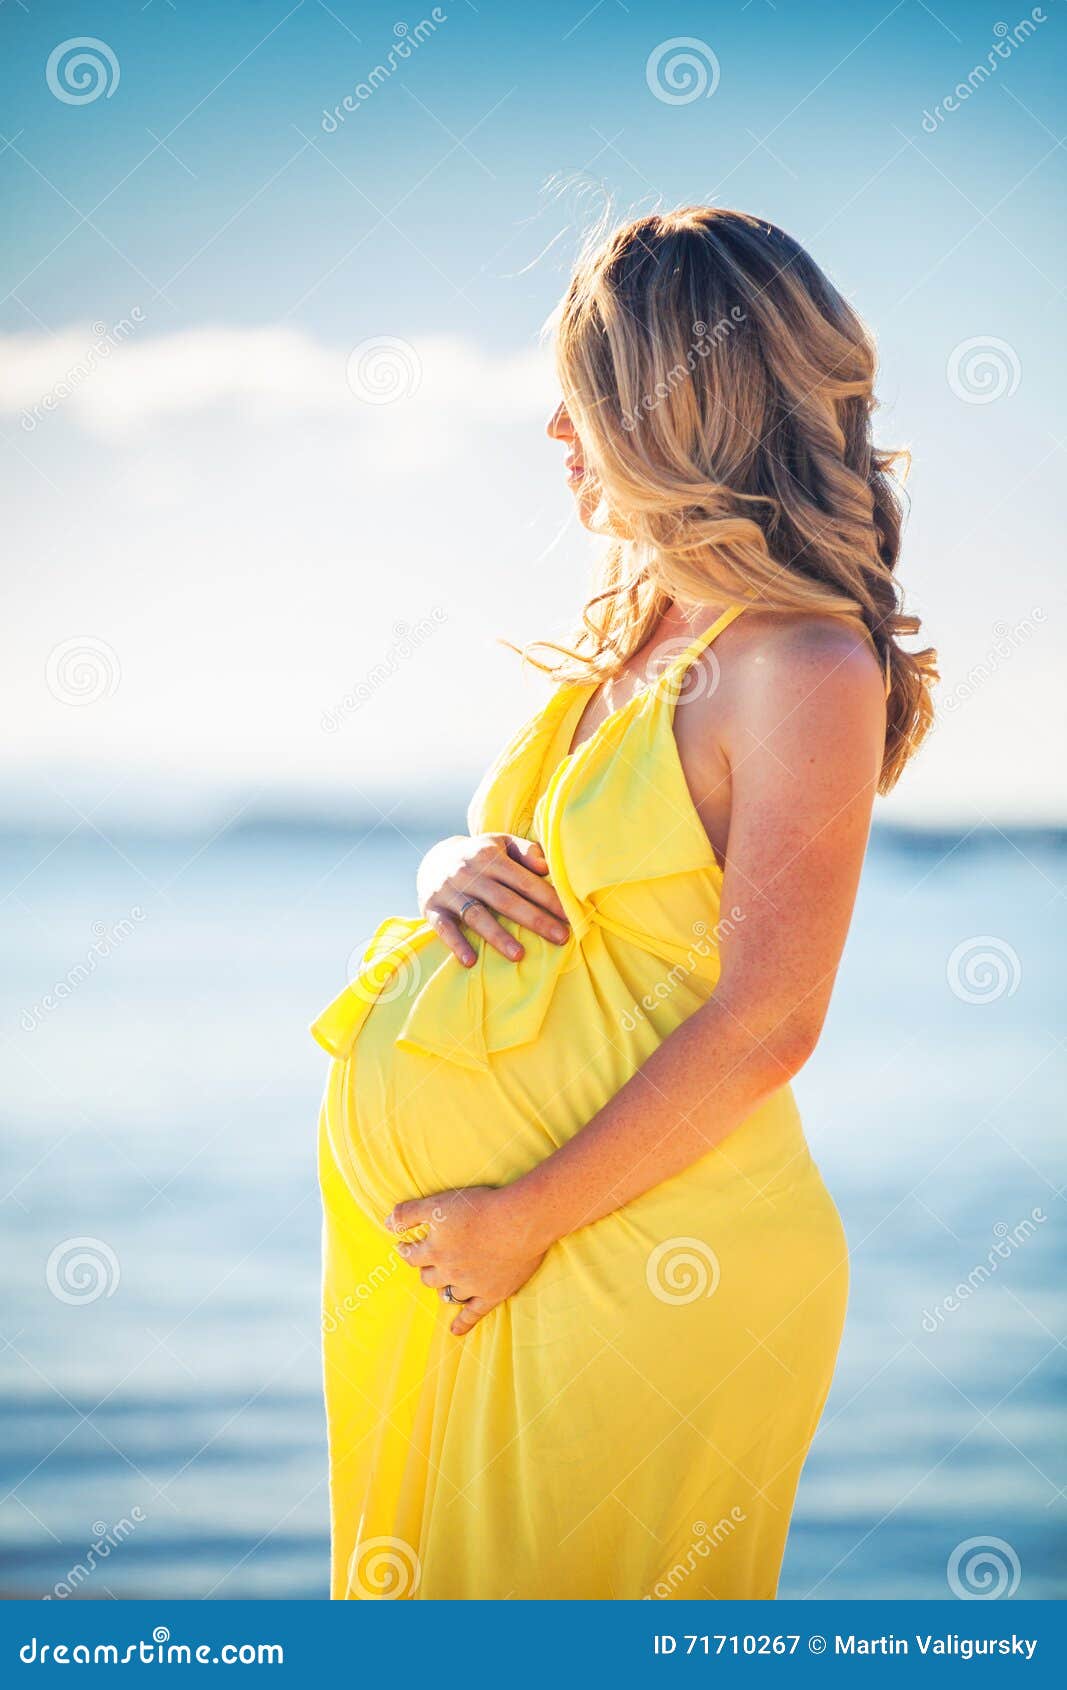 salto Mendicidad Evolucionar Perfil De La Mujer Embarazada Con El Pelo Largo En Vestido Amarillo En  Imagen de archivo - Imagen de amor, lifestyle: 71710267